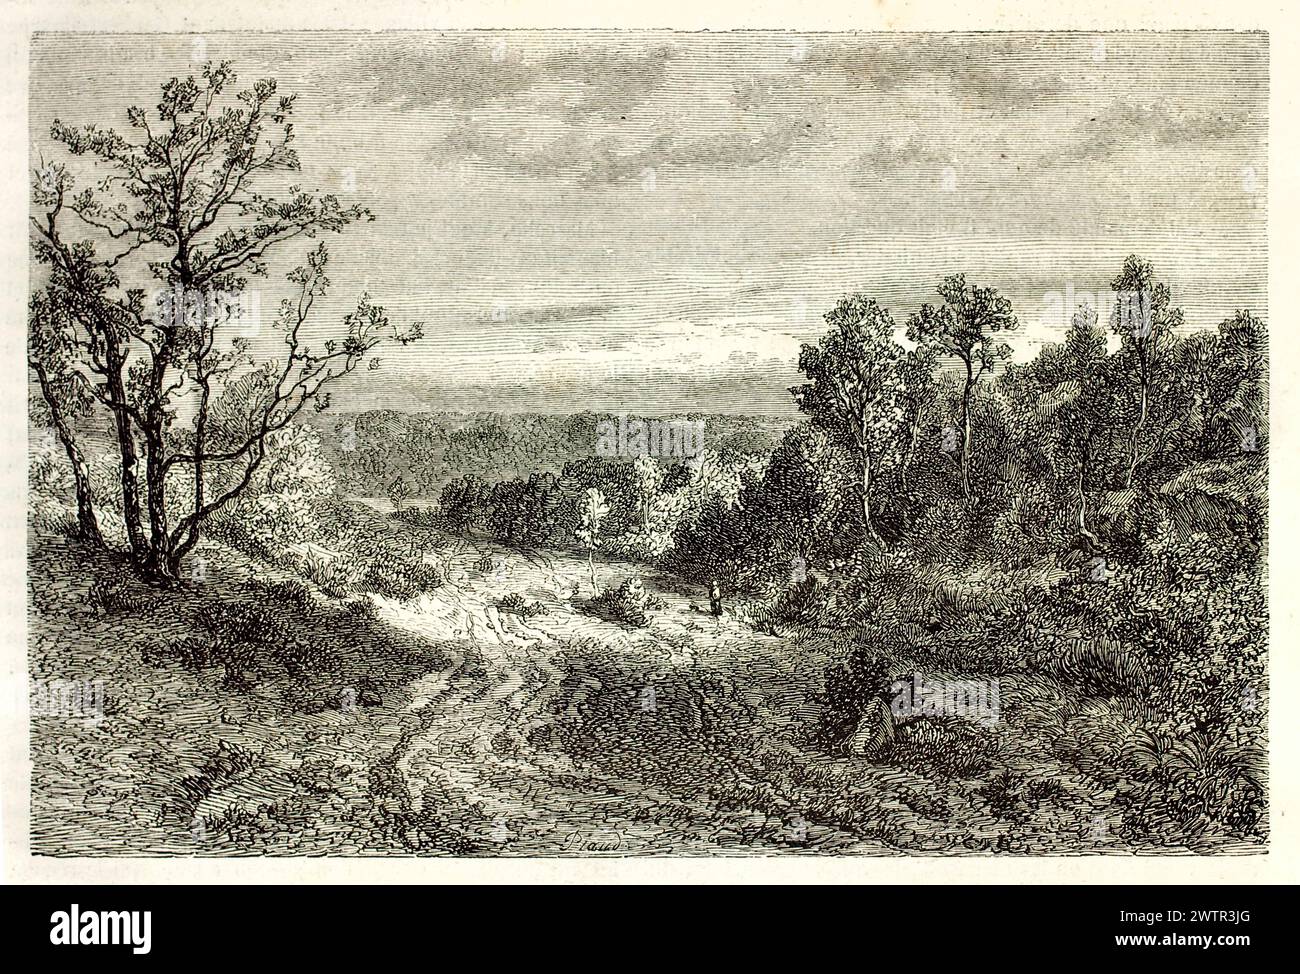 Alte Sicht auf den Wald von Fontainebleau, Frankreich. Erstellt von Francais nach pron, veröffentlicht auf Magasin Pittoresque, Paris, 1852 Stockfoto